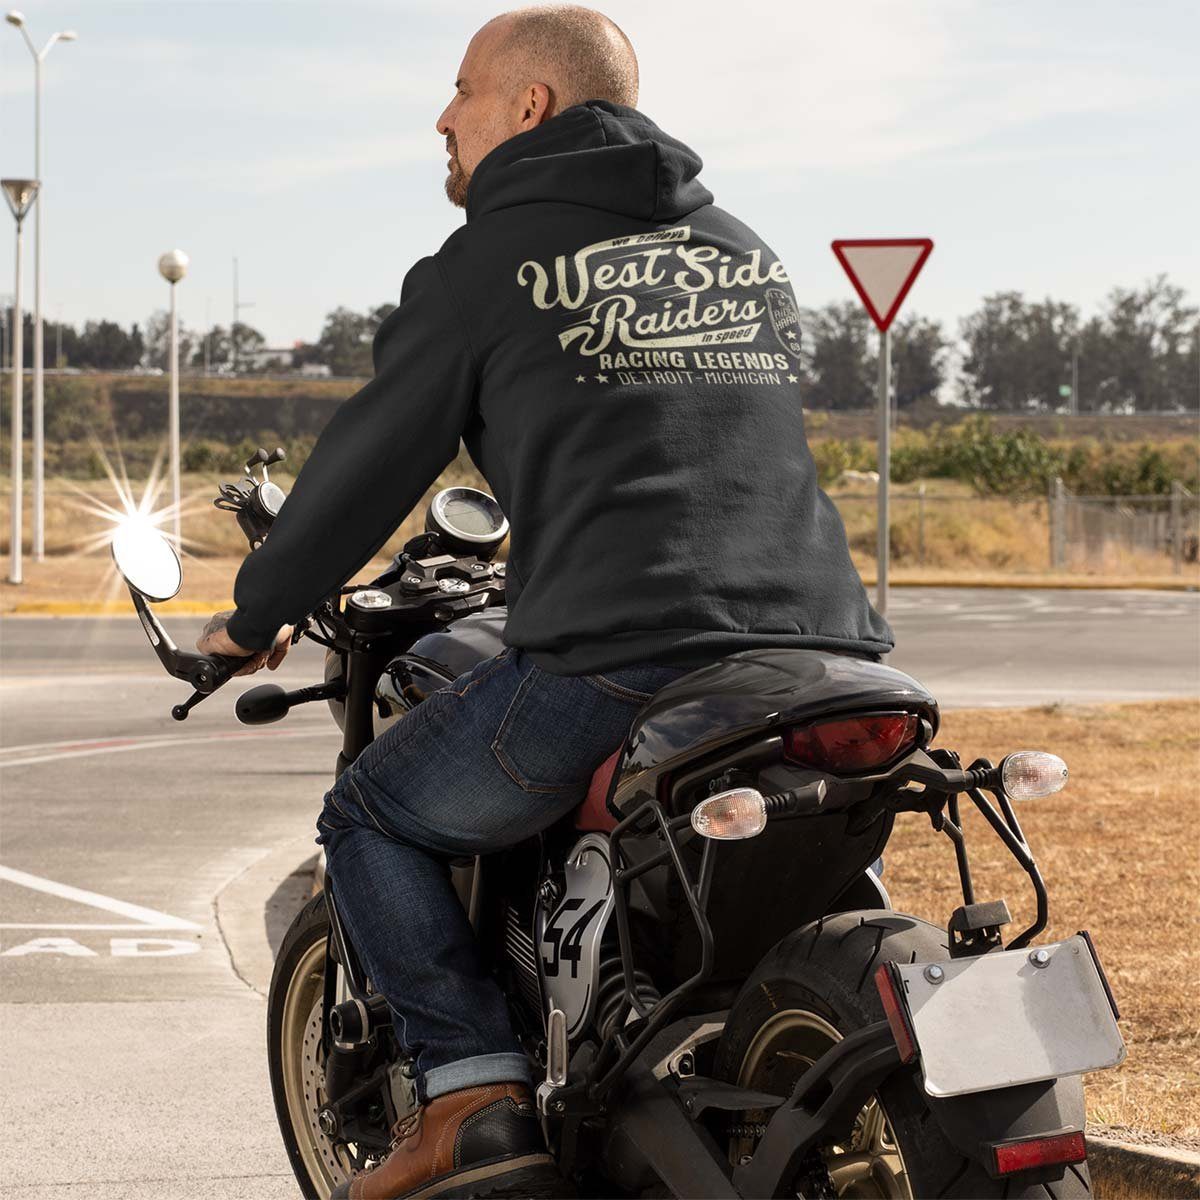 Wheels Grau / Melange Rebel Zip On Kapuzensweatjacke Kapuzenjacke, West Hoodie Motiv Raiders Motorrad Biker mit Side